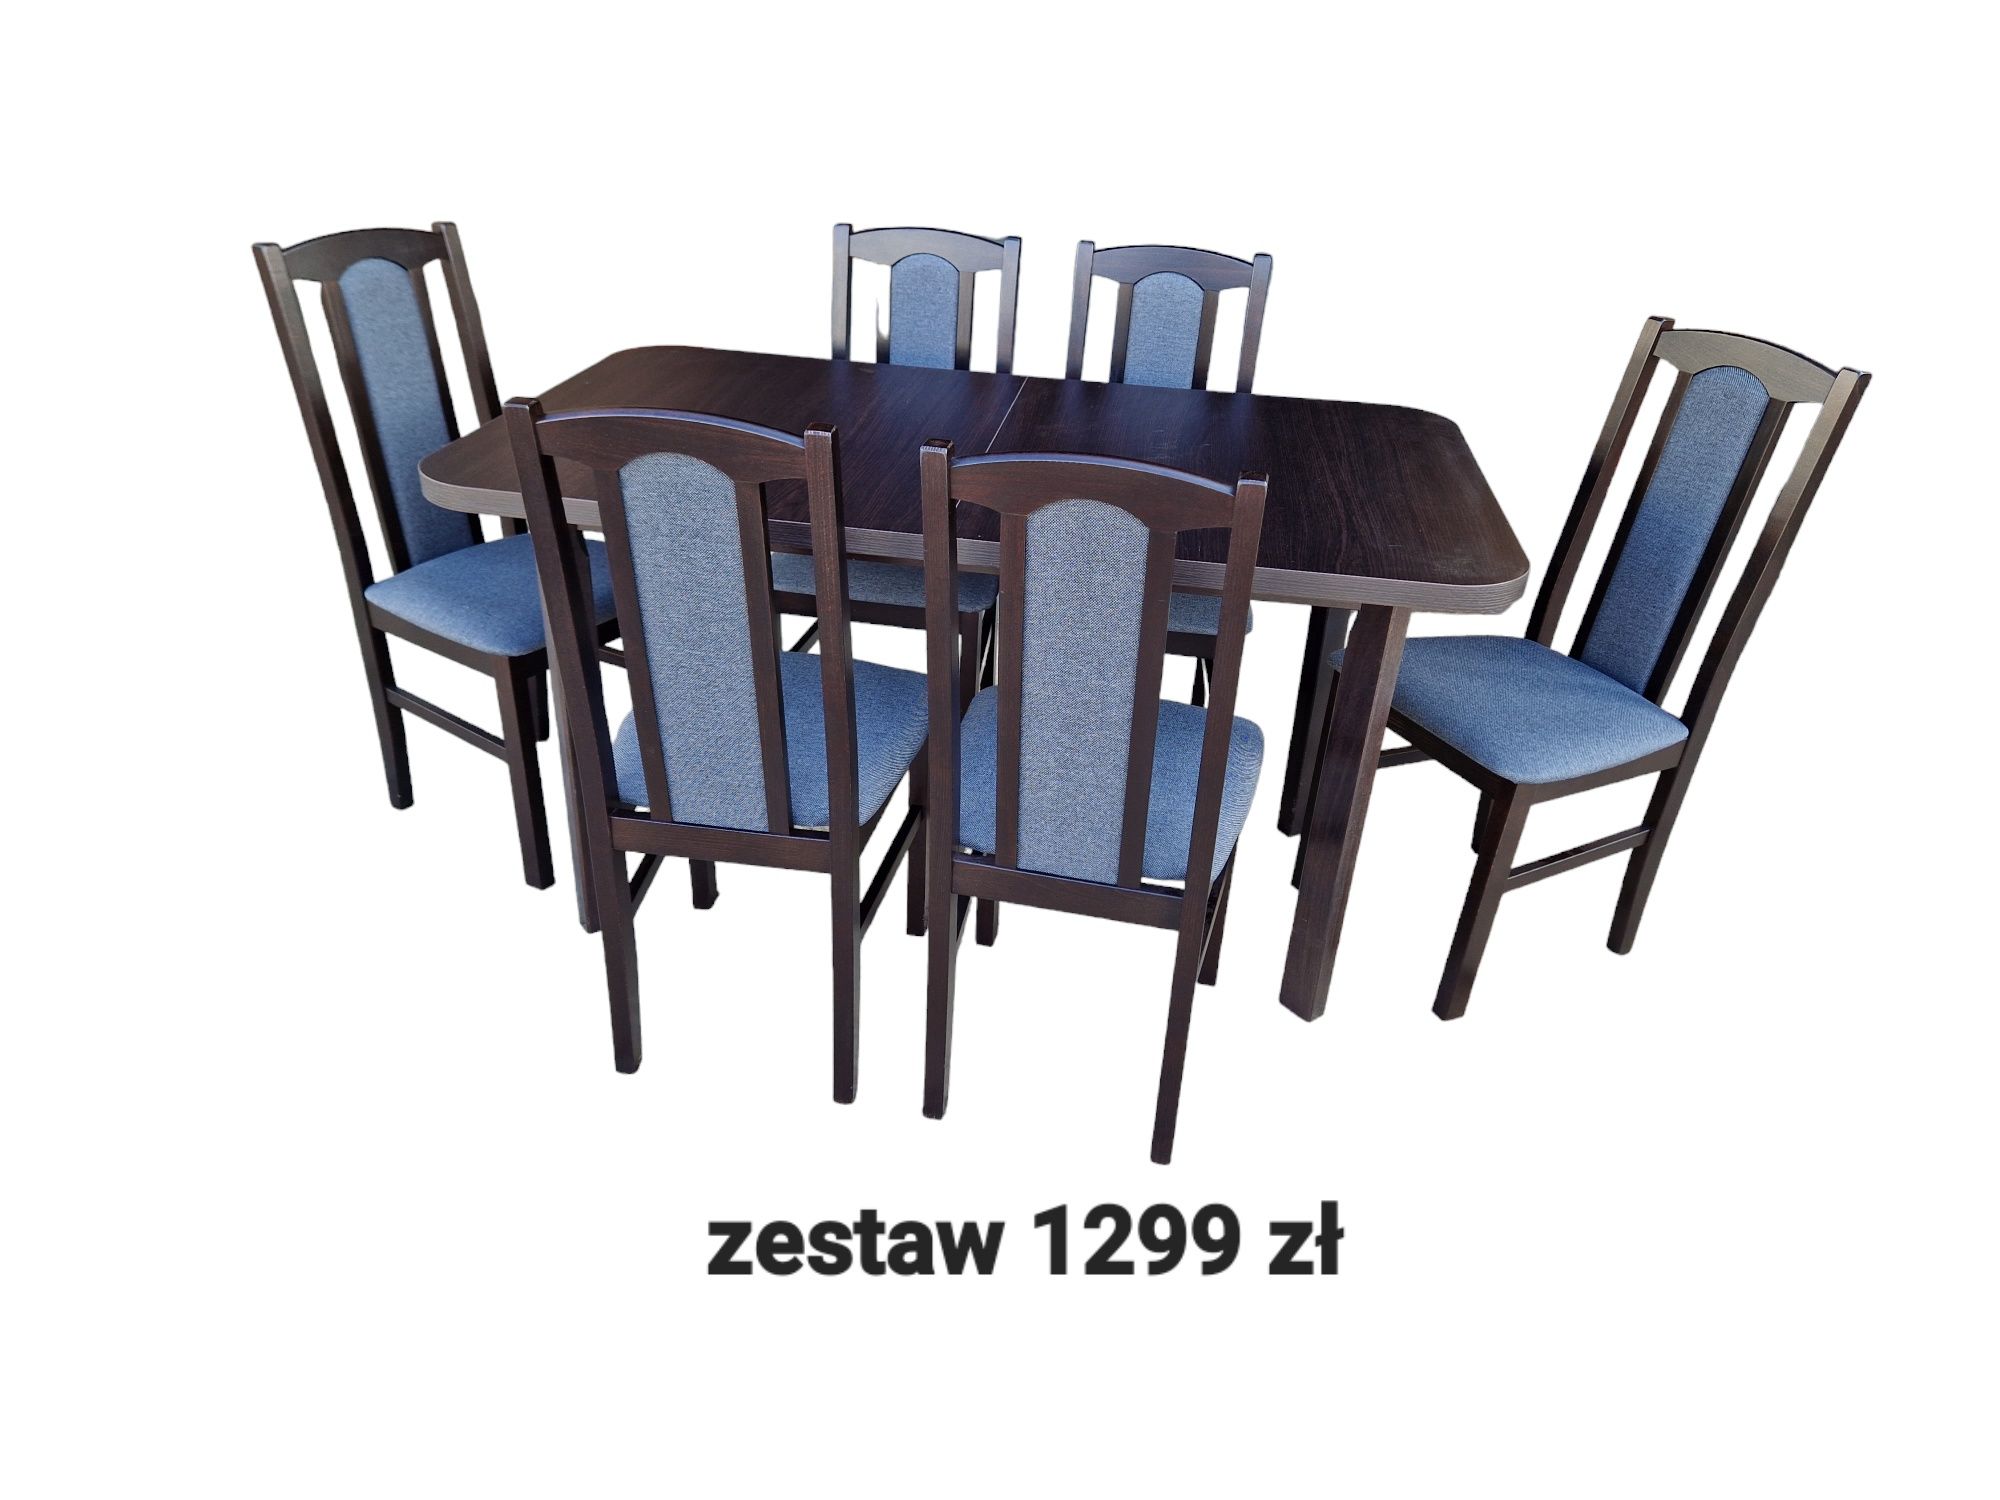 Nowe: Stół 80x140/180 + 6 krzeseł, OD RĘKI, wenge + grafit, dostawa PL